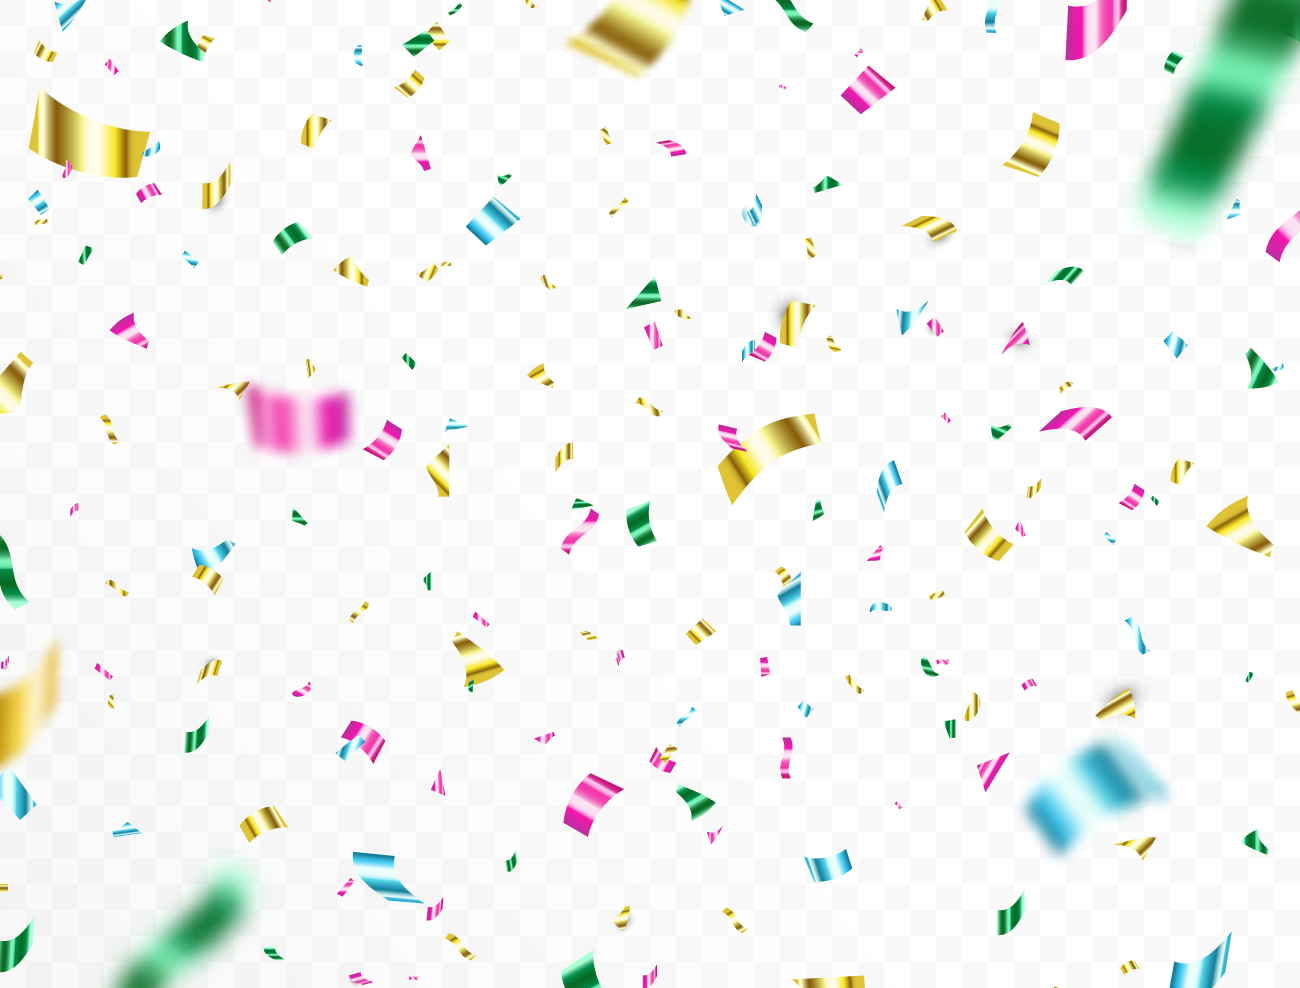 周年庆节日庆祝胜利成功派对彩纸彩带装饰元素ESP矢量设计素材